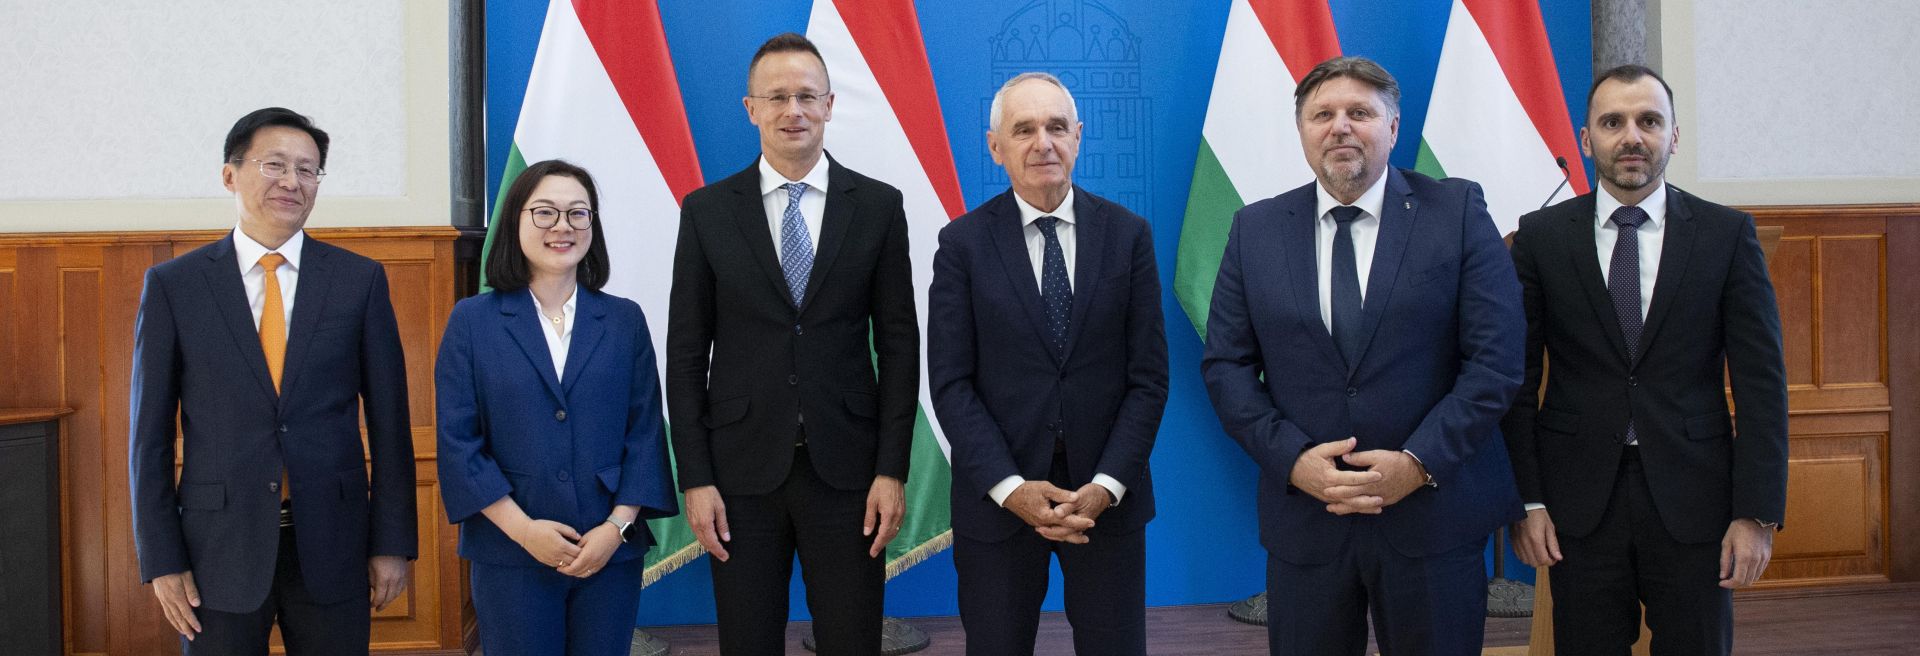 Legnagyobb európai gyártóüzemét hozza létre Magyarországon a lineáris mozgástechnológia egyik vezető vállalata